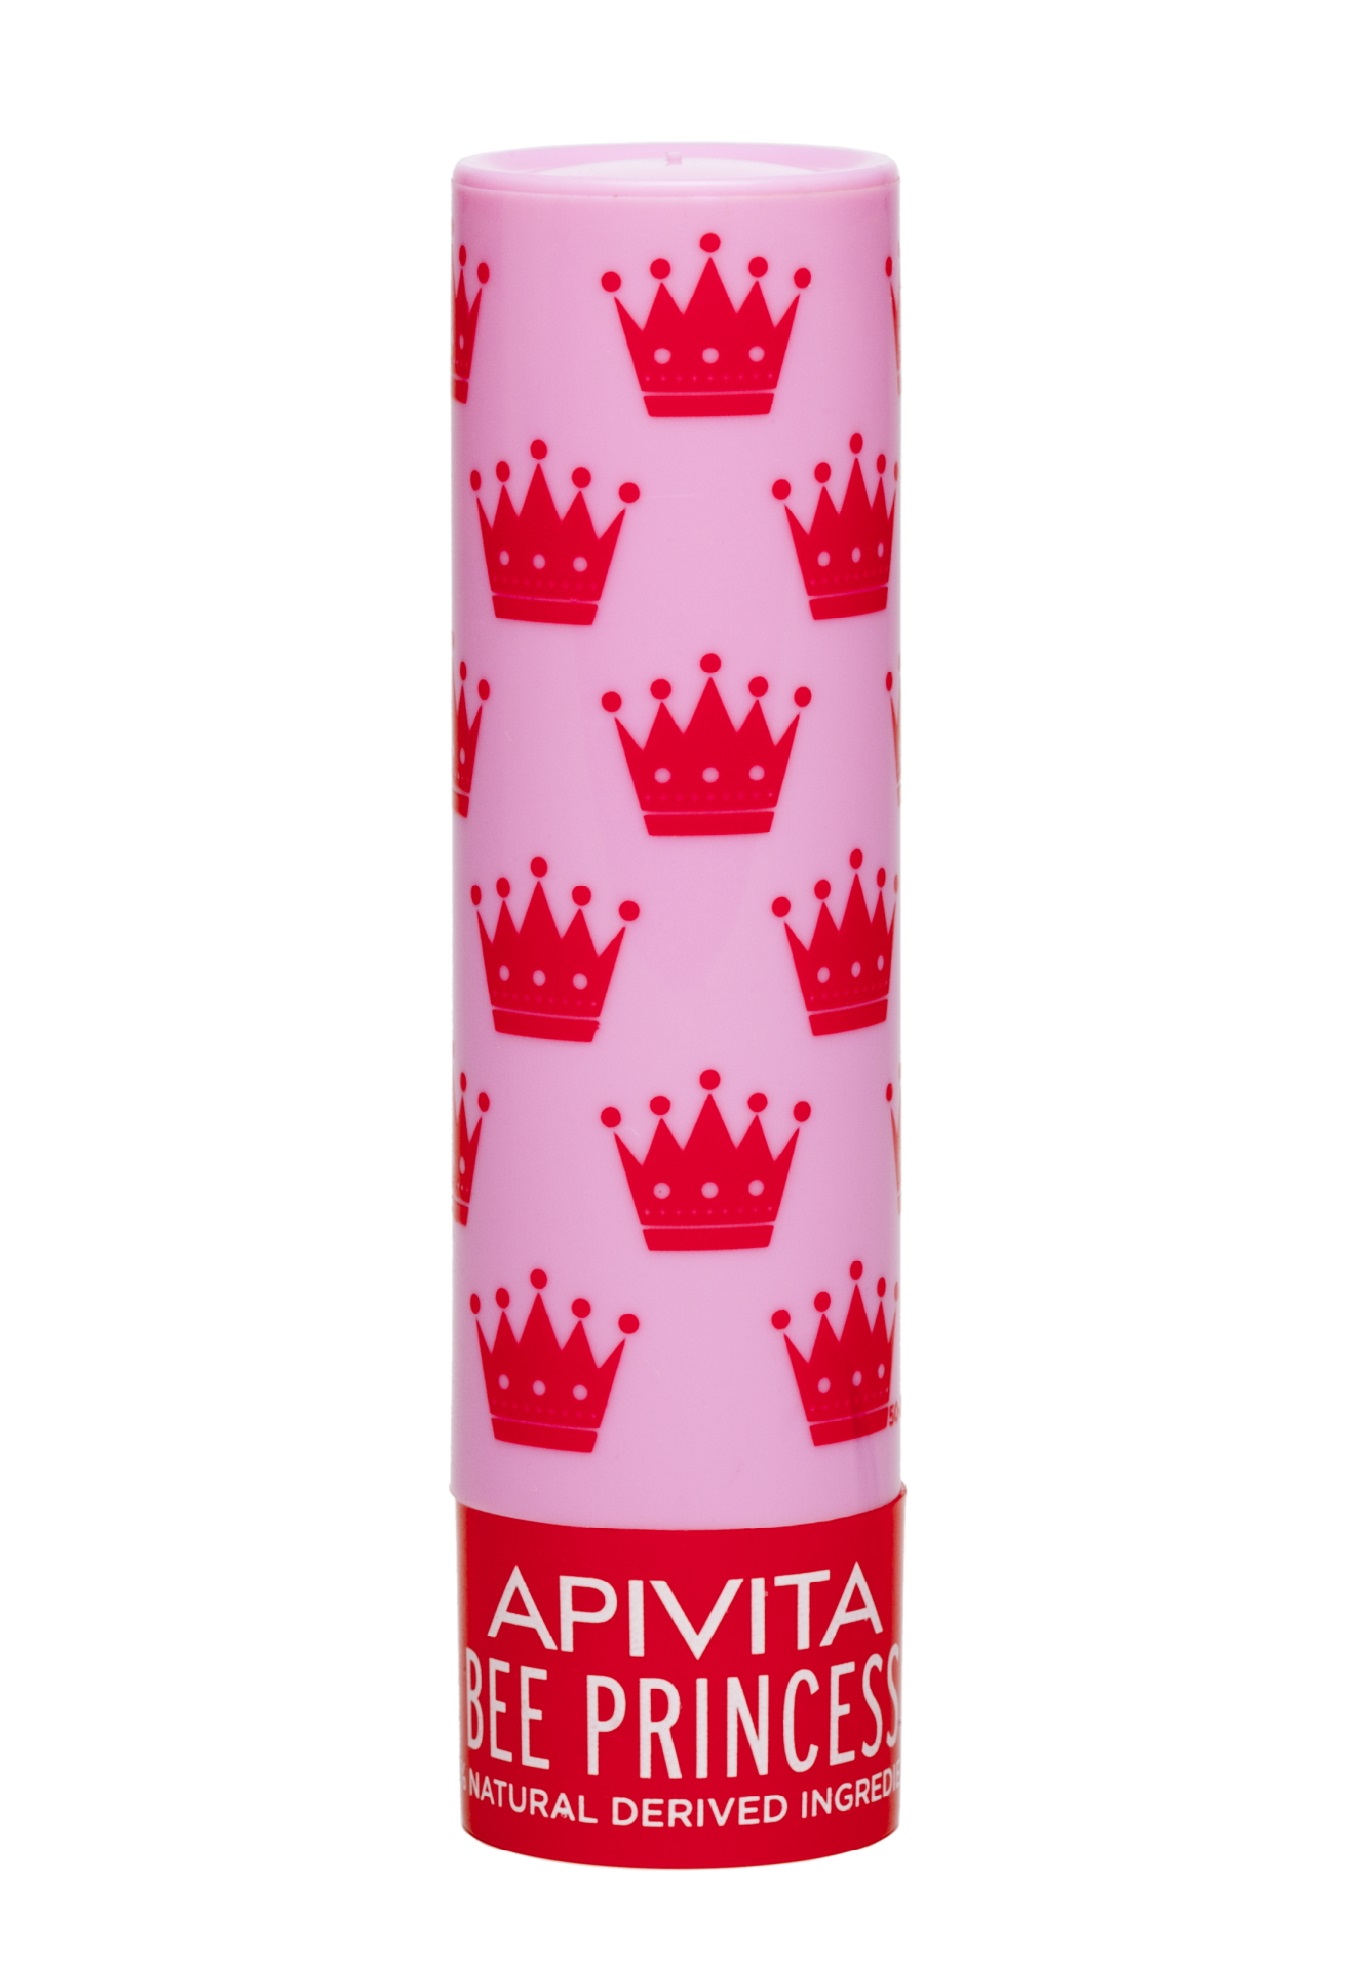 Apivita Уход для губ Принцесса Пчела Био, 4,4 г (Apivita, Lip Care) био уход для губ apivita bee princess 4 4 гр